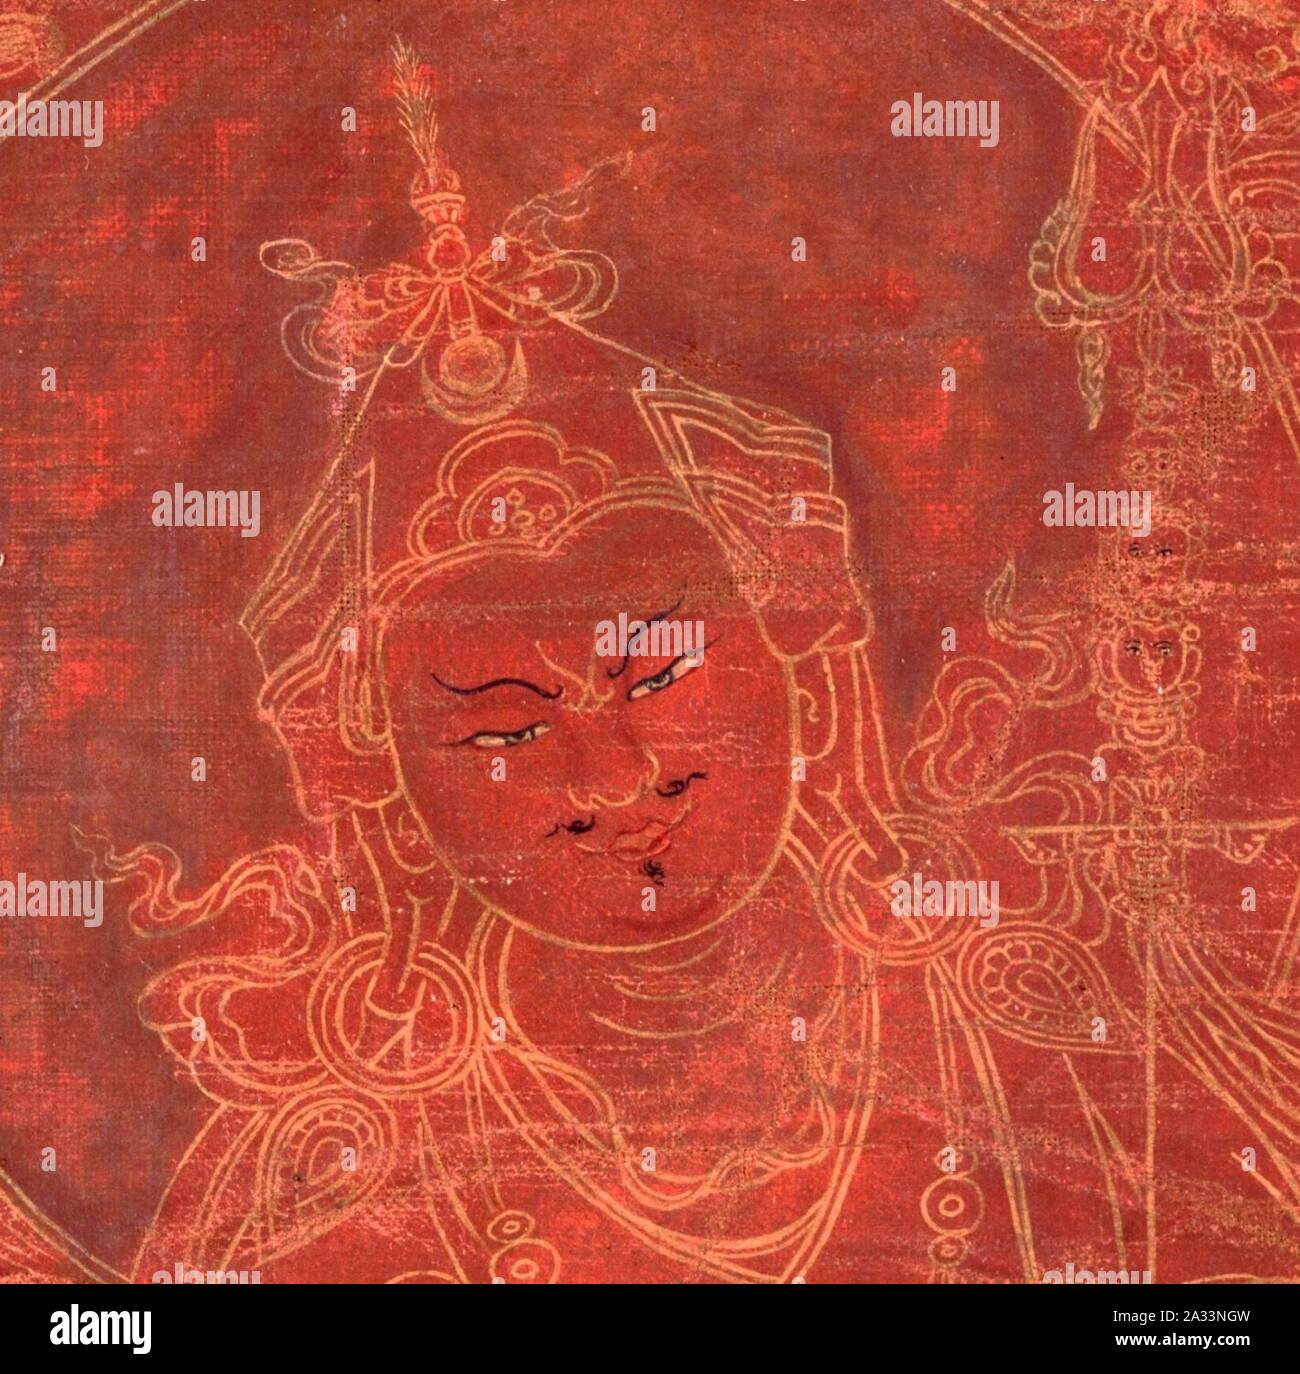 Détail du visage, Padmasambhava, 18e siècle la peinture du Tibet, la masse rouge pigment minéral sur le coton (recadré). Banque D'Images